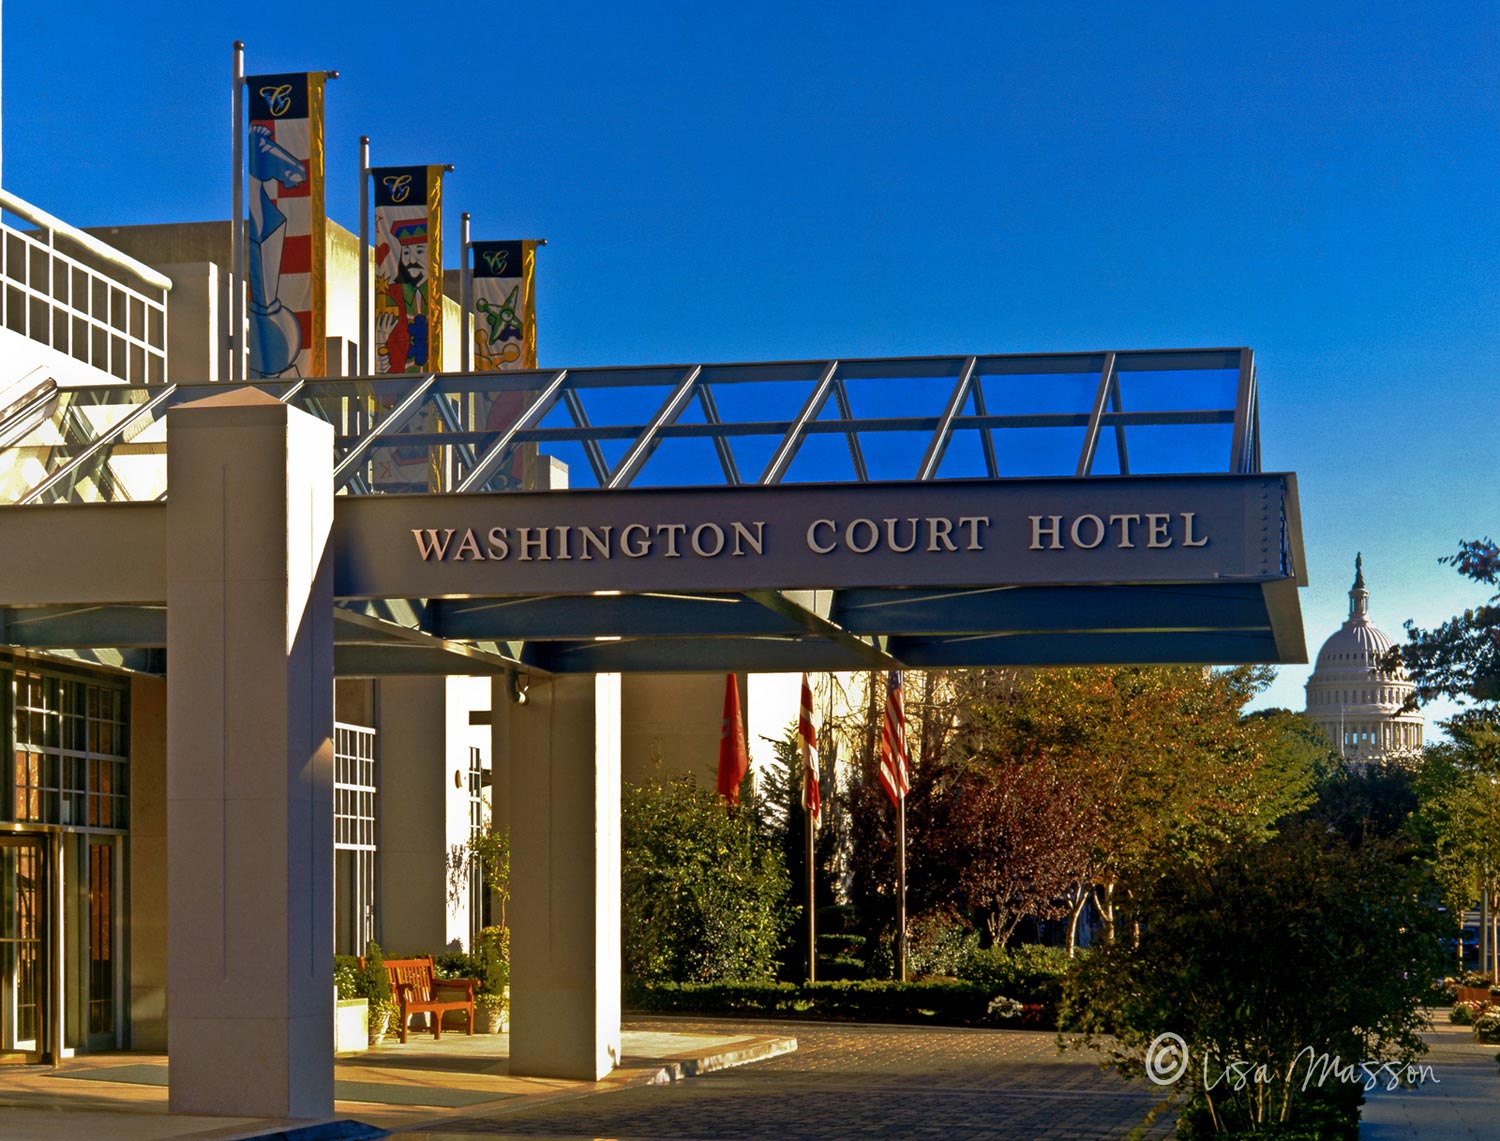 Washington Court Hotel Washington, DC